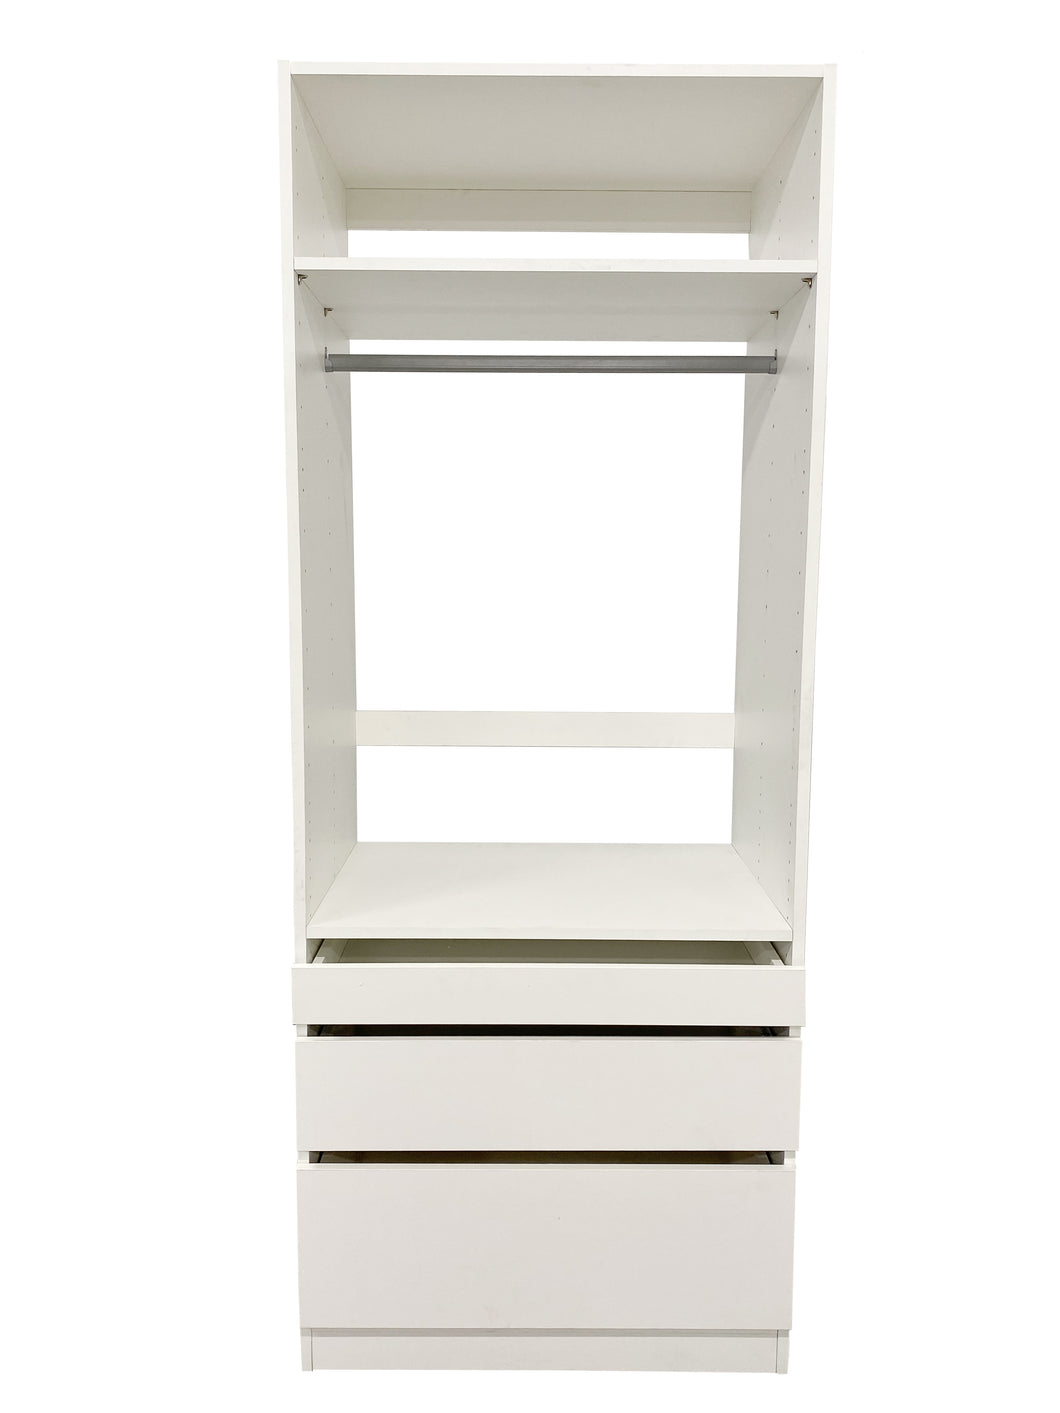 Kloset Closet Set, Top Hanger, Bottom 1 Small, 1 Medium, 1 Large Drawers Athens White